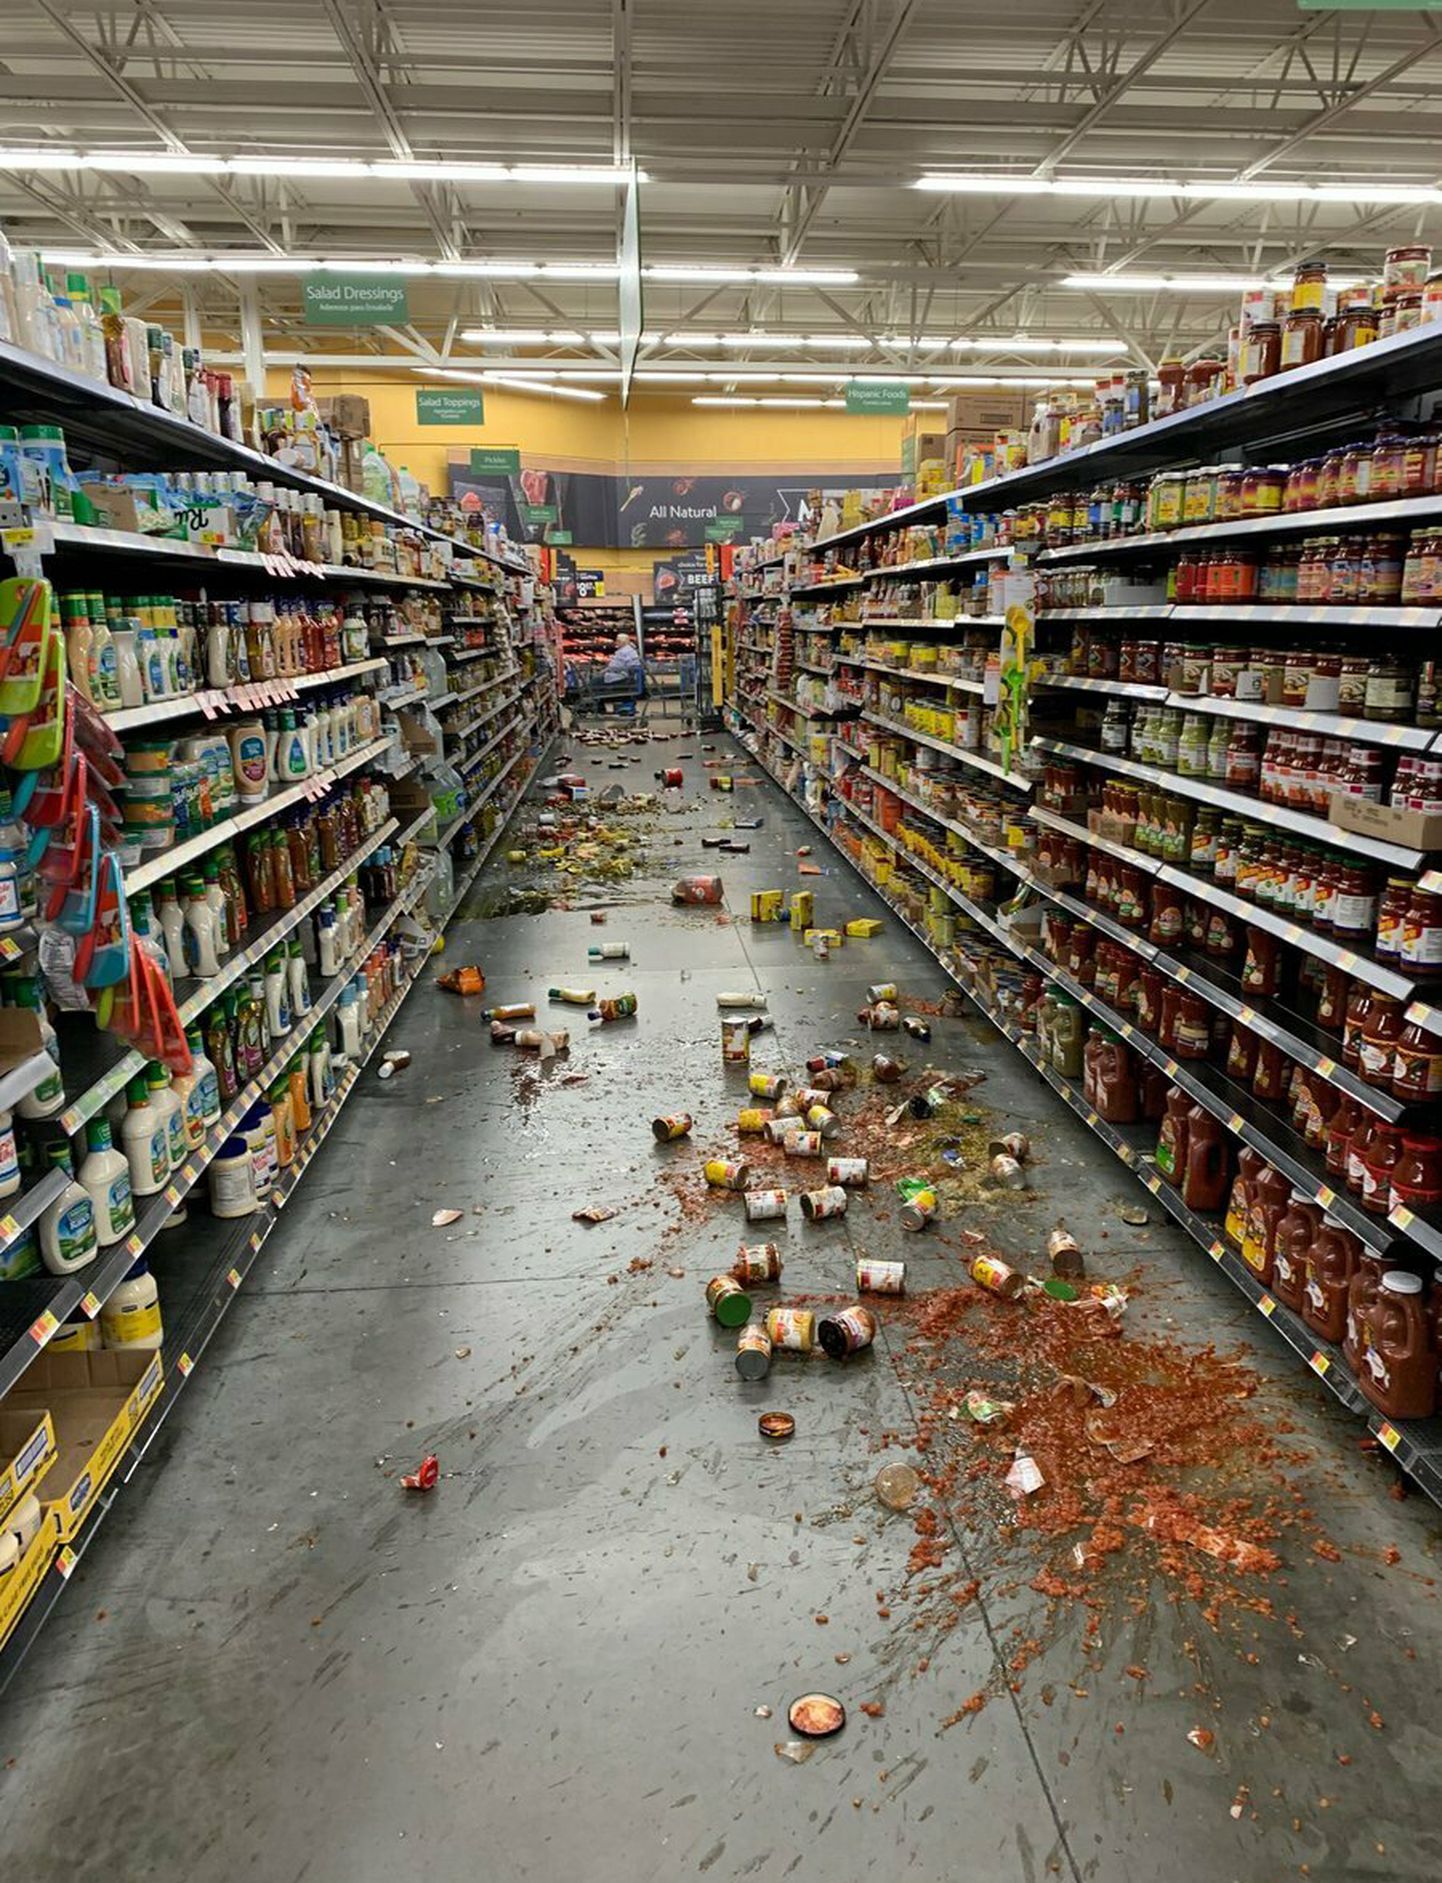 California maavärina tagajärjed ühes kaubanduskeskuses.